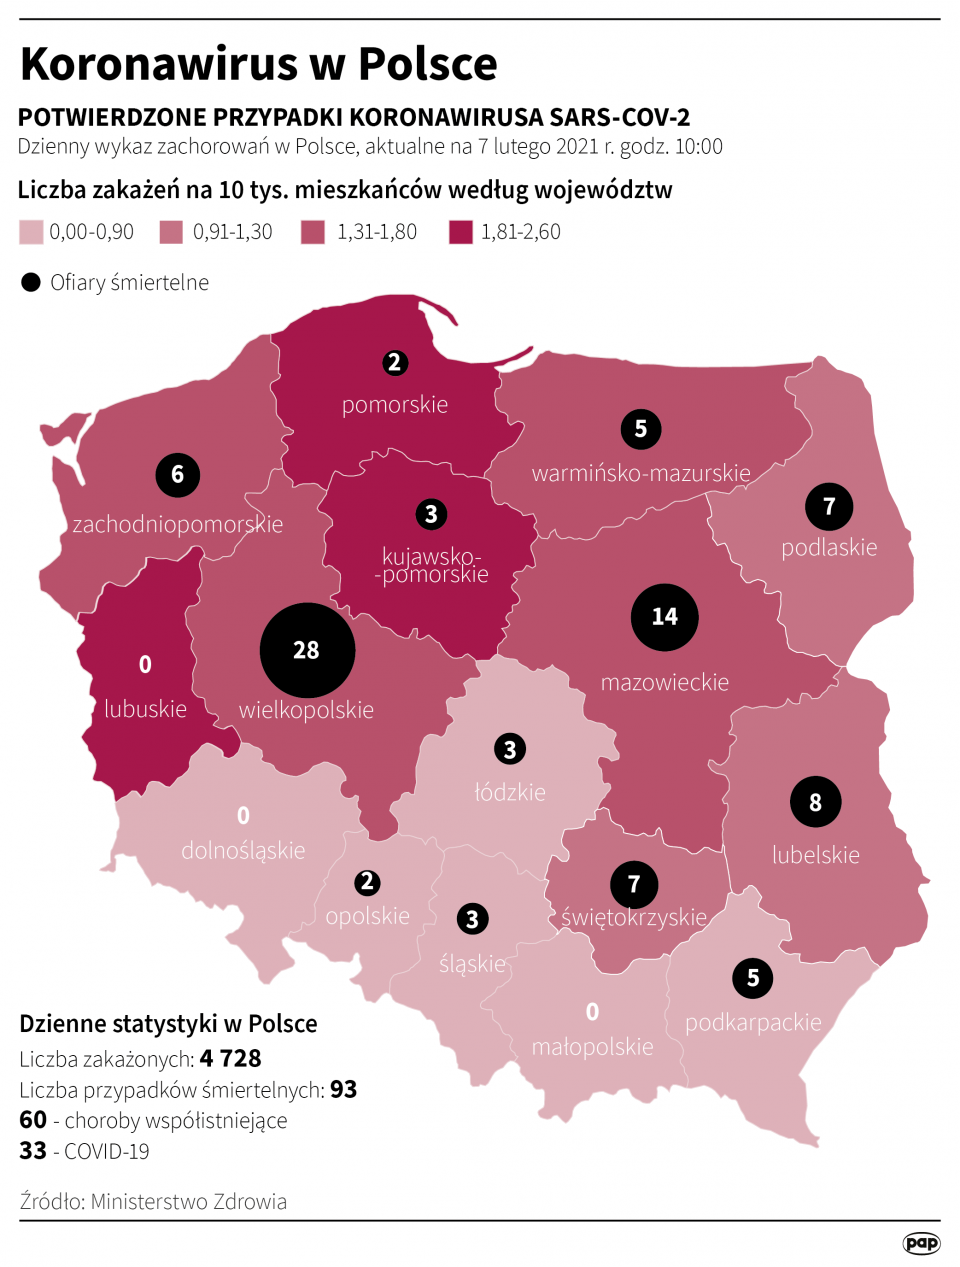 Infografika "Koronawirus w Polsce 07.02.2021" [autor: Maria Samczuk, źródło: PAP]